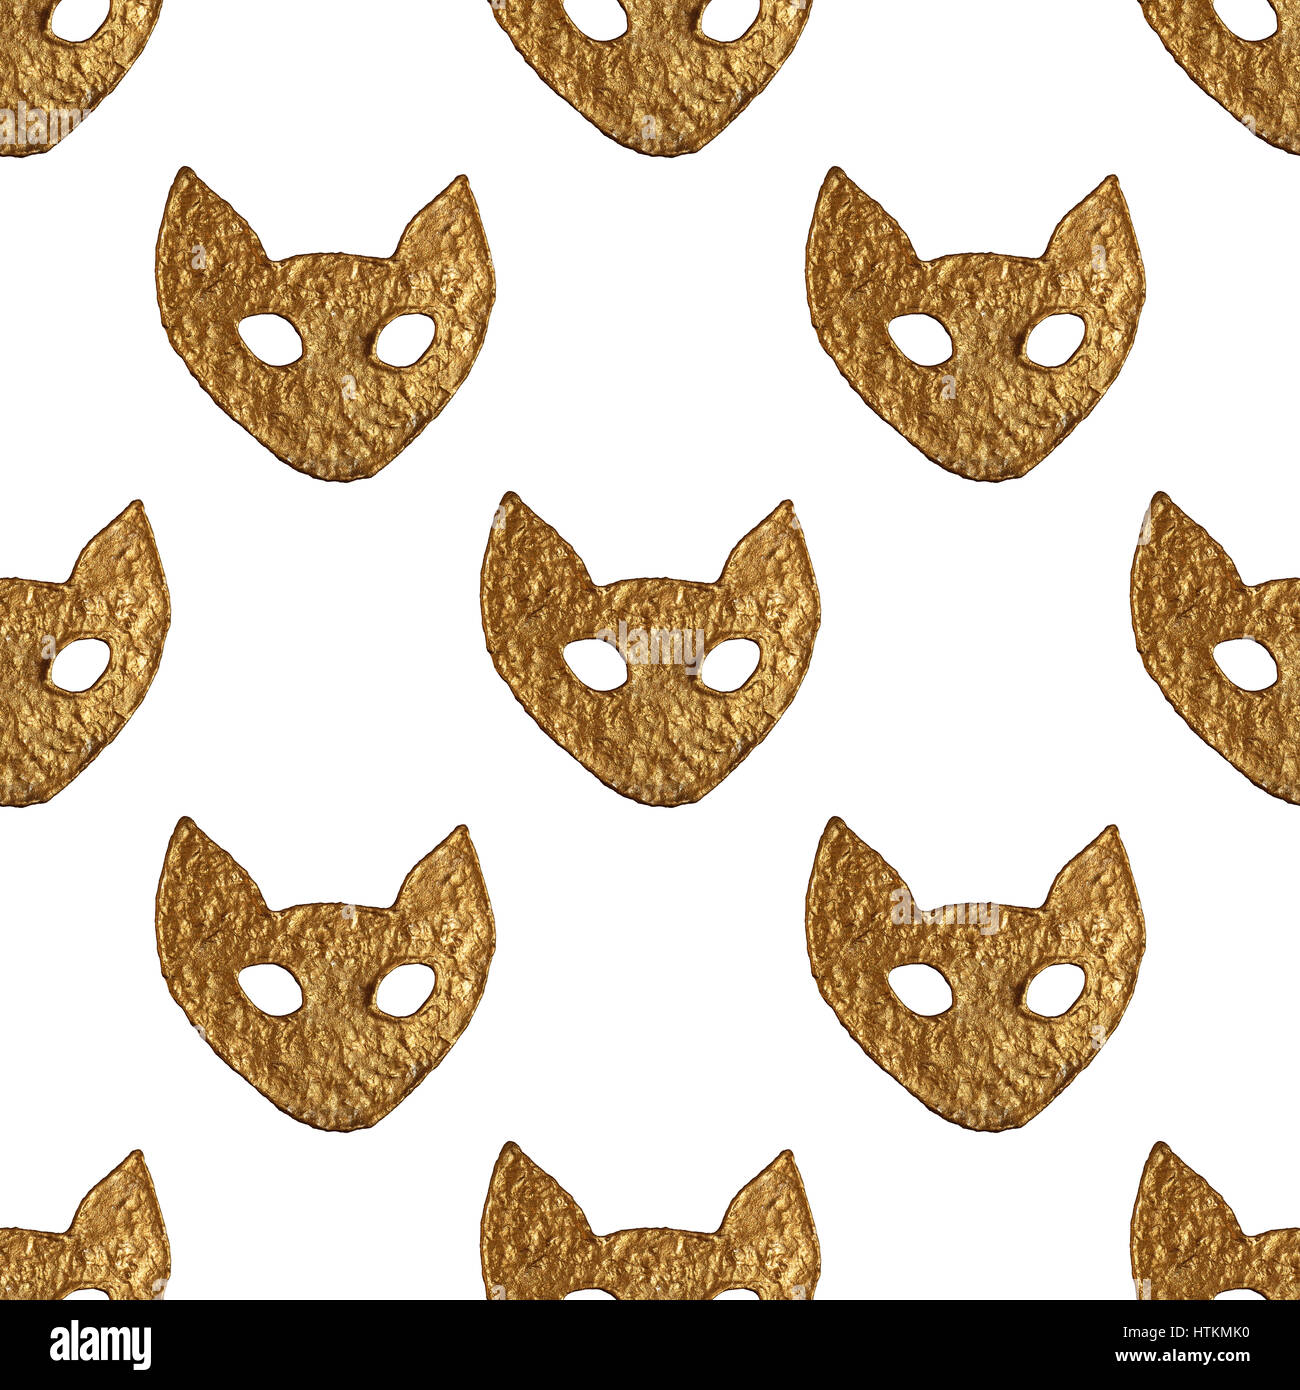 Résumé motif visage de chat. Peint à la main d'or d'arrière-plan transparent. Illustration des animaux stylisés. Banque D'Images